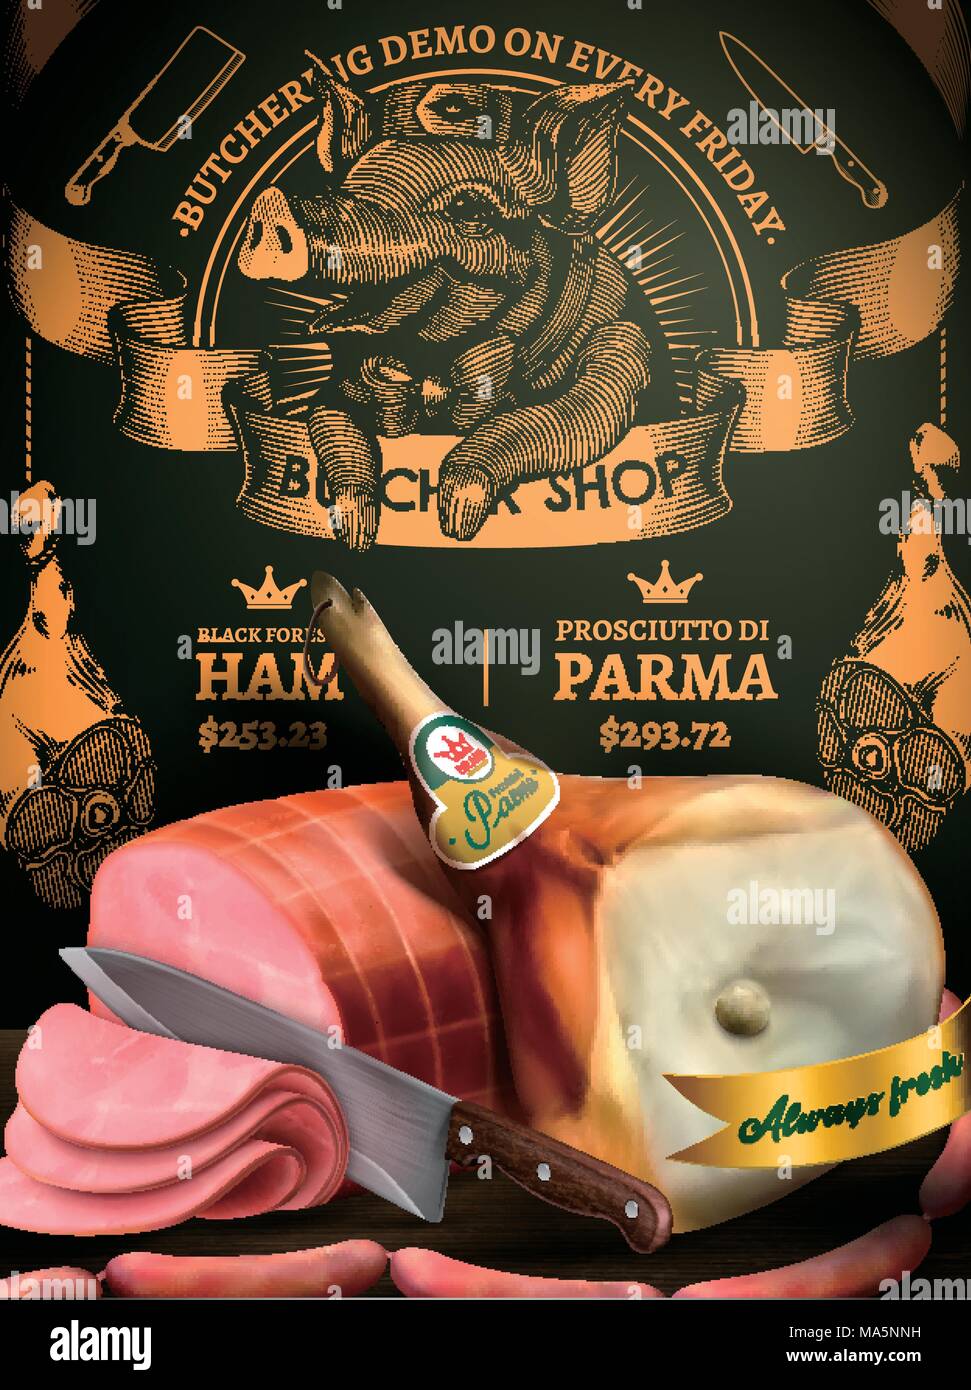 Metzgerei shop Promotion ads, köstliche Delikatessen in 3D-Darstellung mit exquisiten Gravur Schwein Fleisch- und Design Stock Vektor